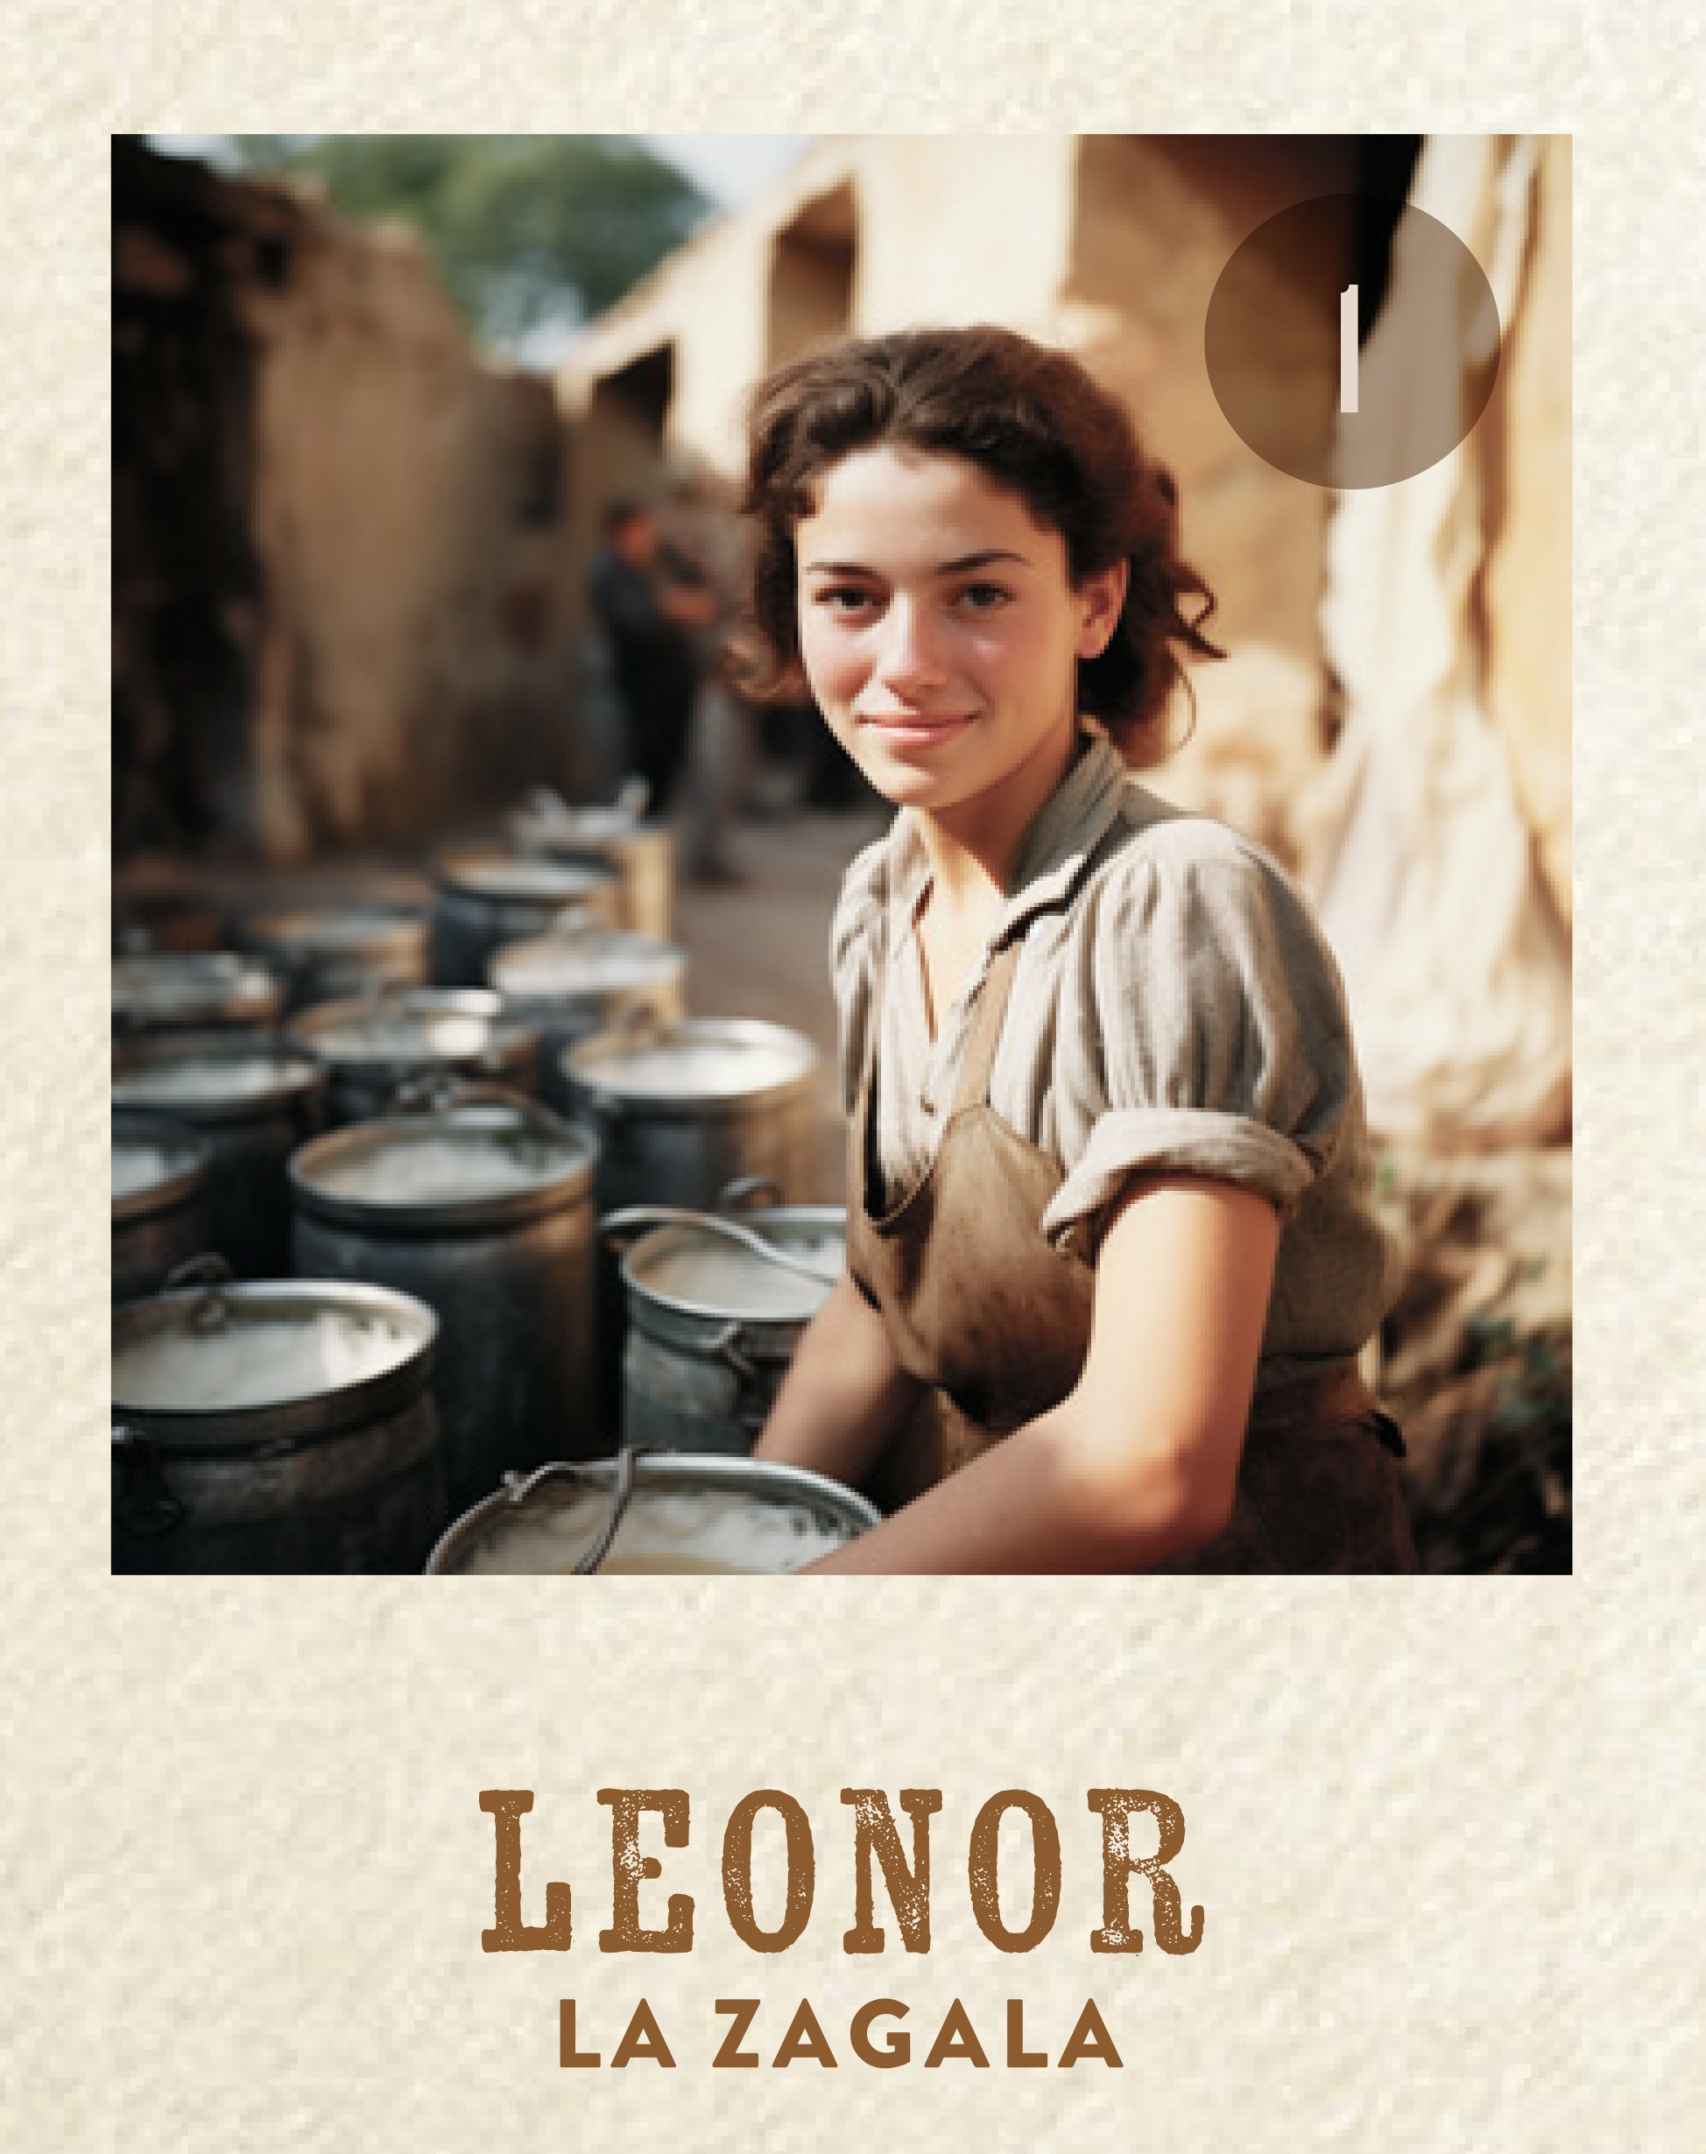 Leonor, 'la zagala'